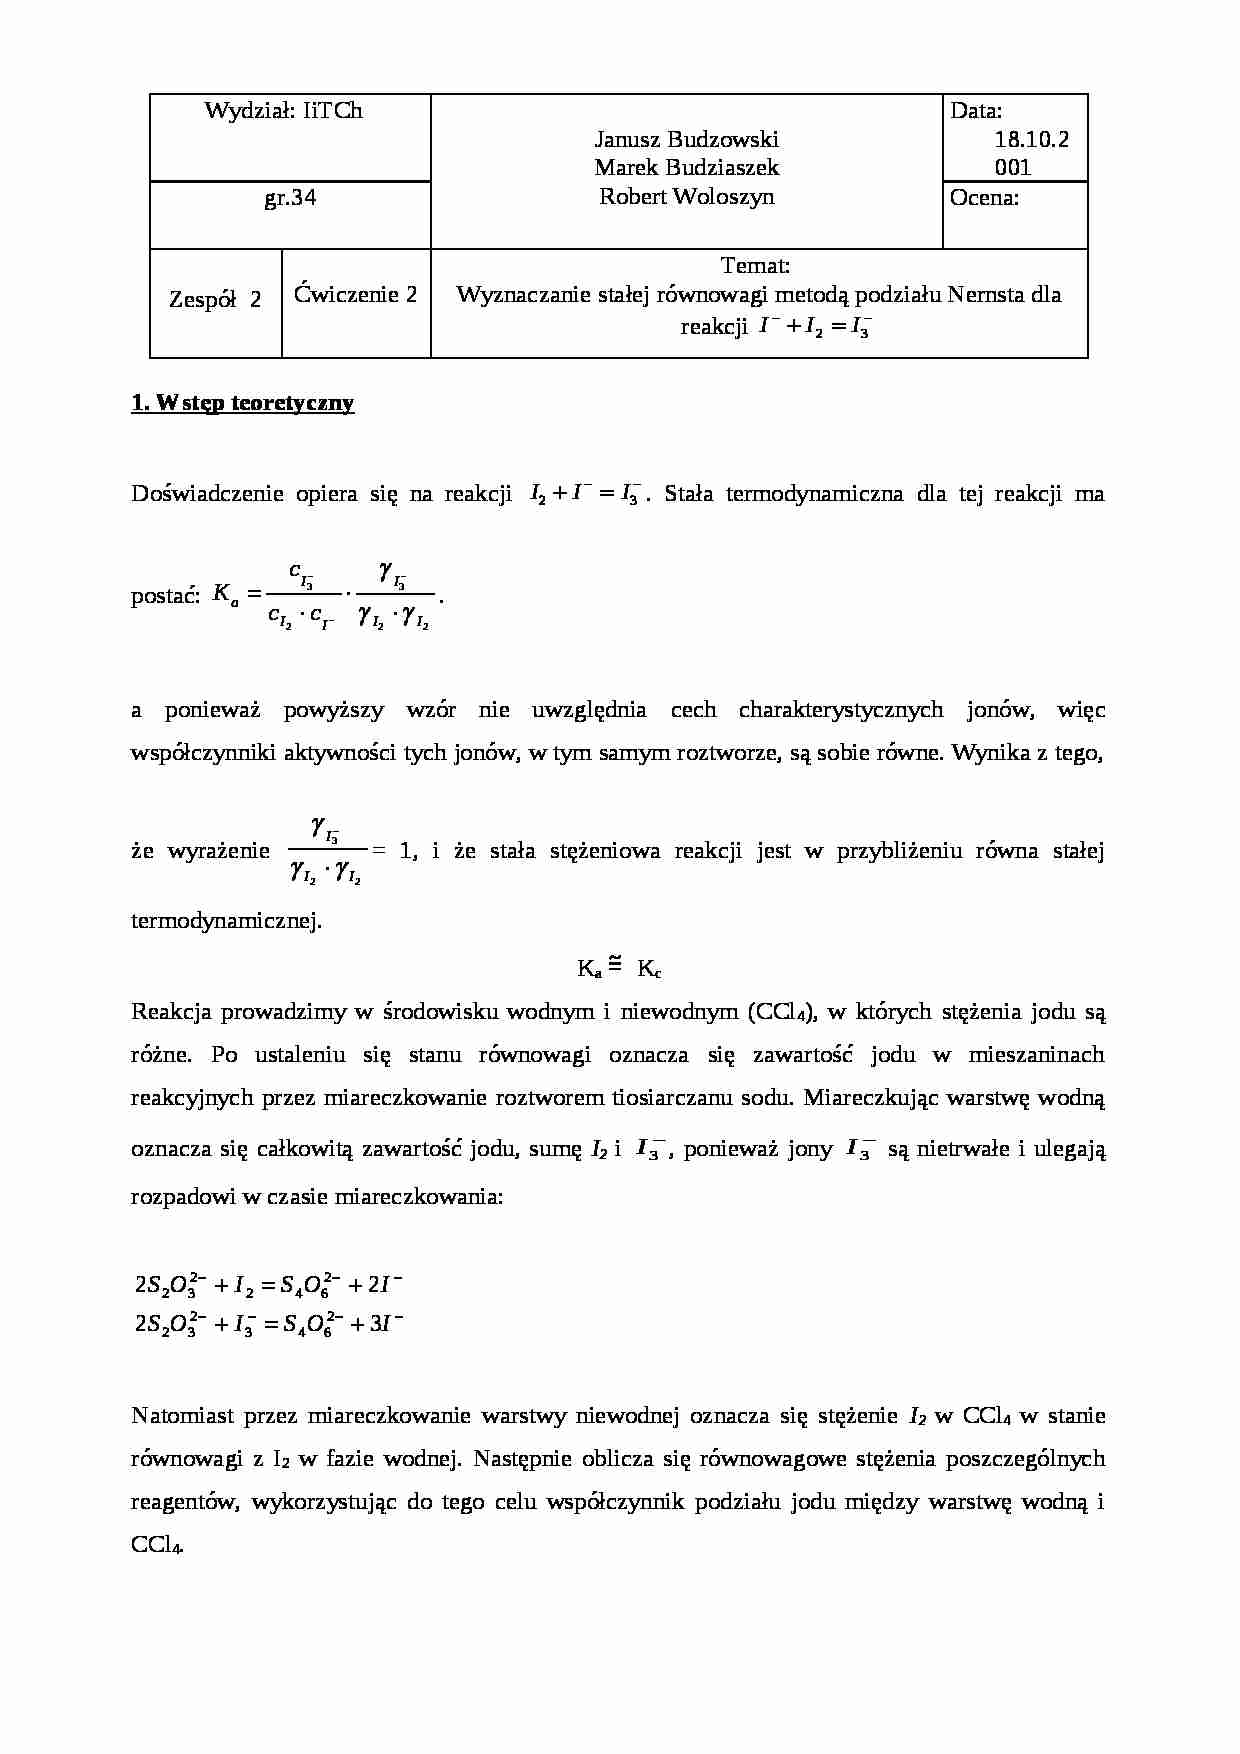 Wyznaczanie stałej równowagi metodą podziału Nernsta dla reakcji - omówienie - strona 1